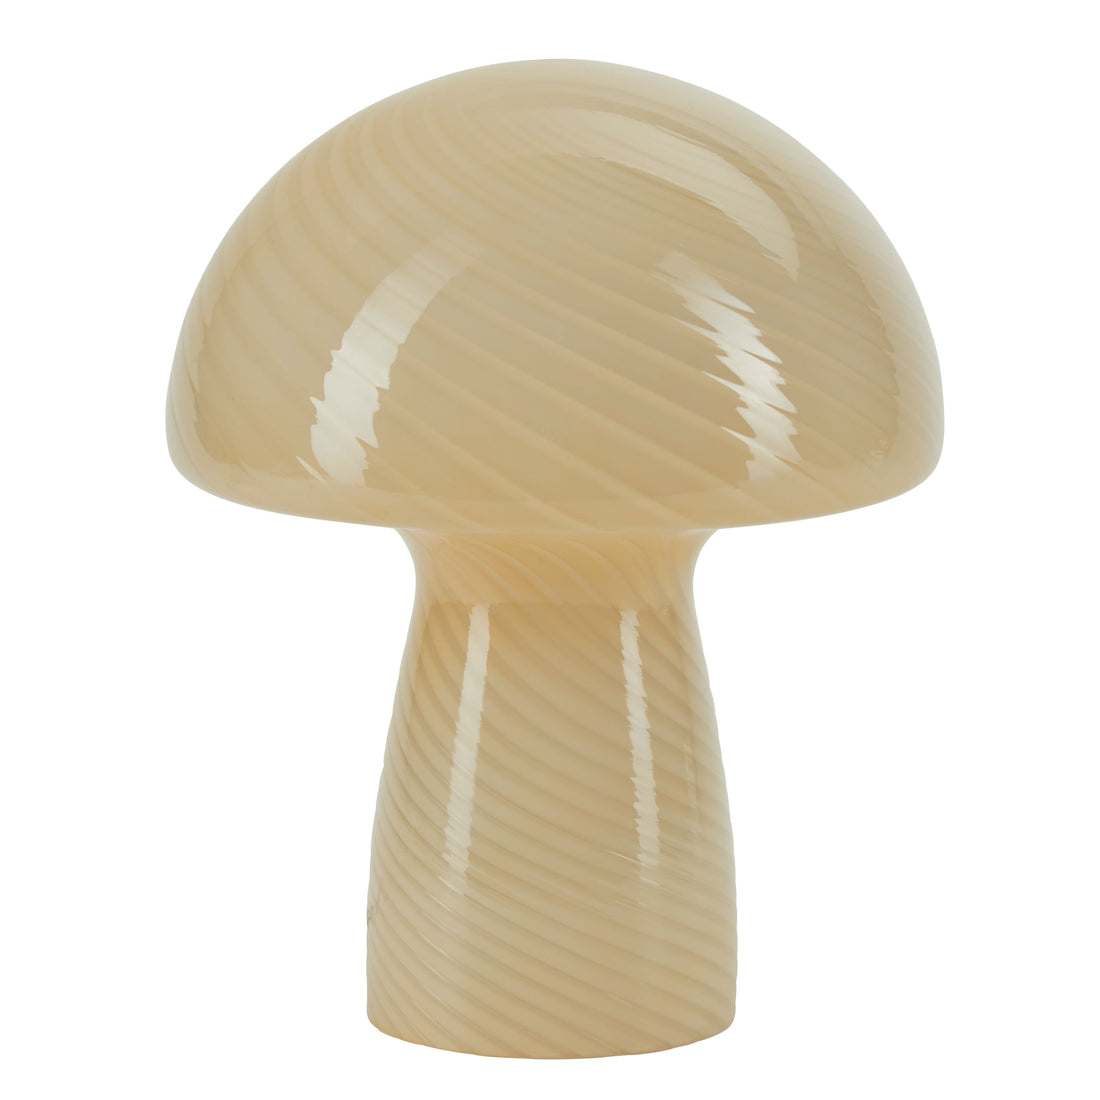 Bahne - sienilamppu / sienpöytävalaisin, keltainen - H23 cm.